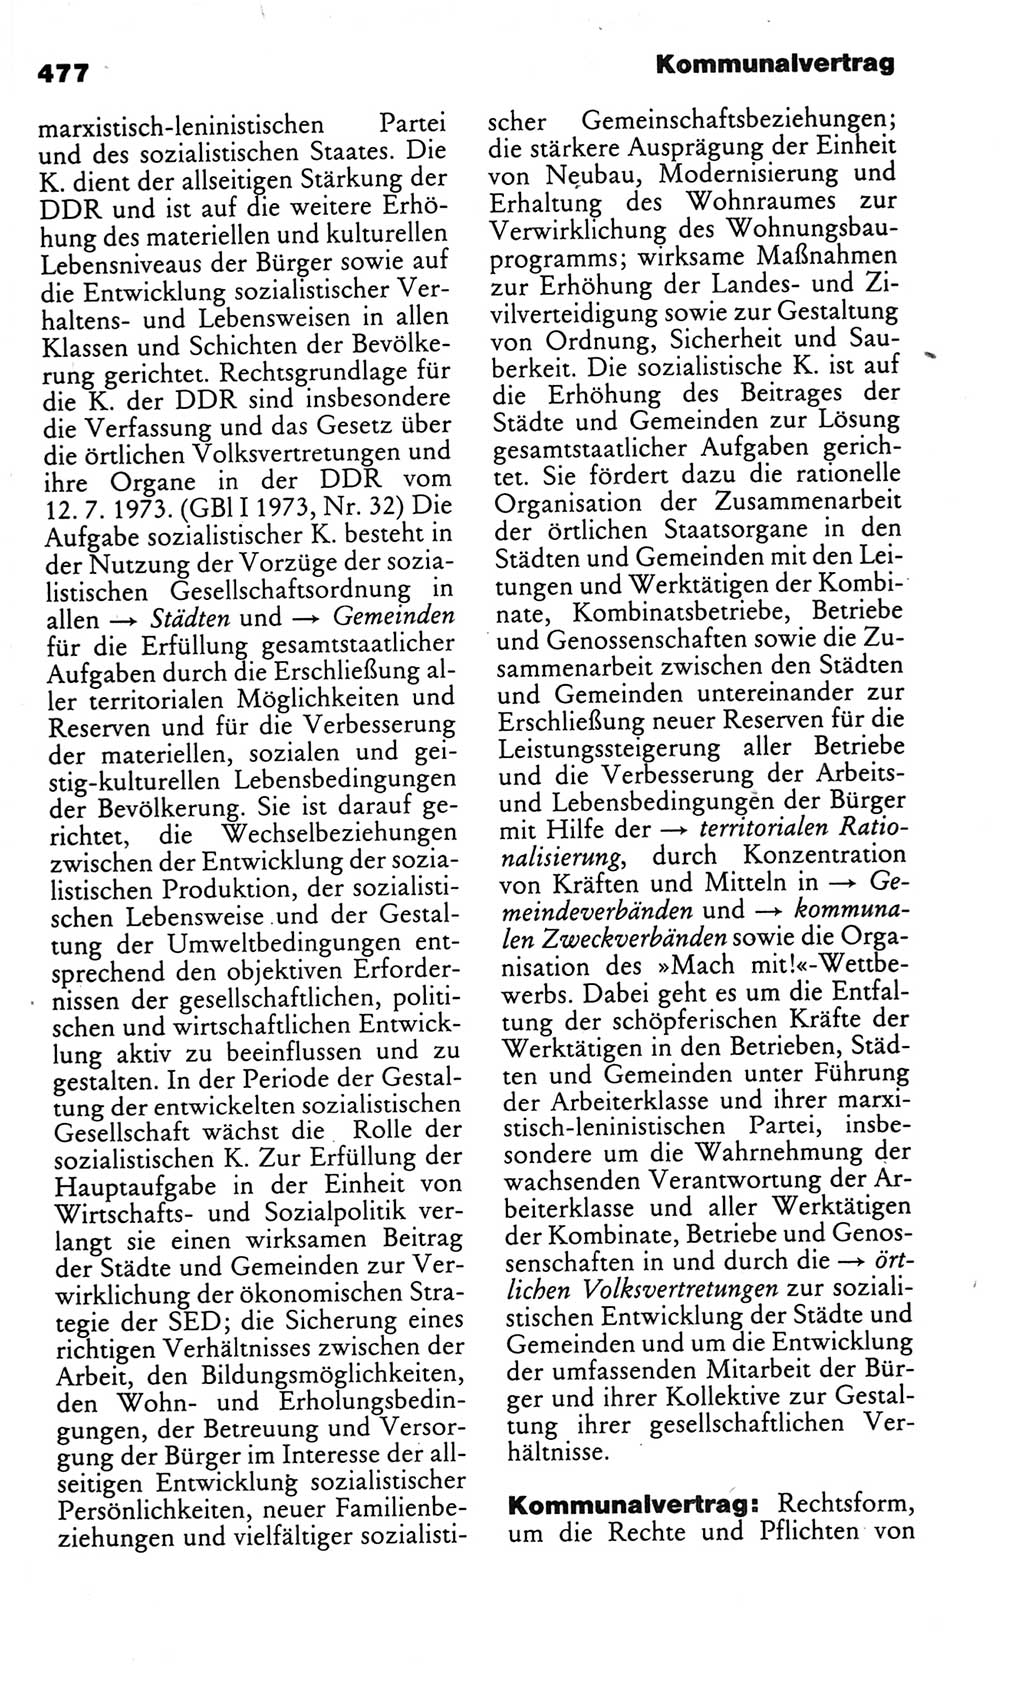 Kleines politisches Wörterbuch [Deutsche Demokratische Republik (DDR)] 1986, Seite 477 (Kl. pol. Wb. DDR 1986, S. 477)